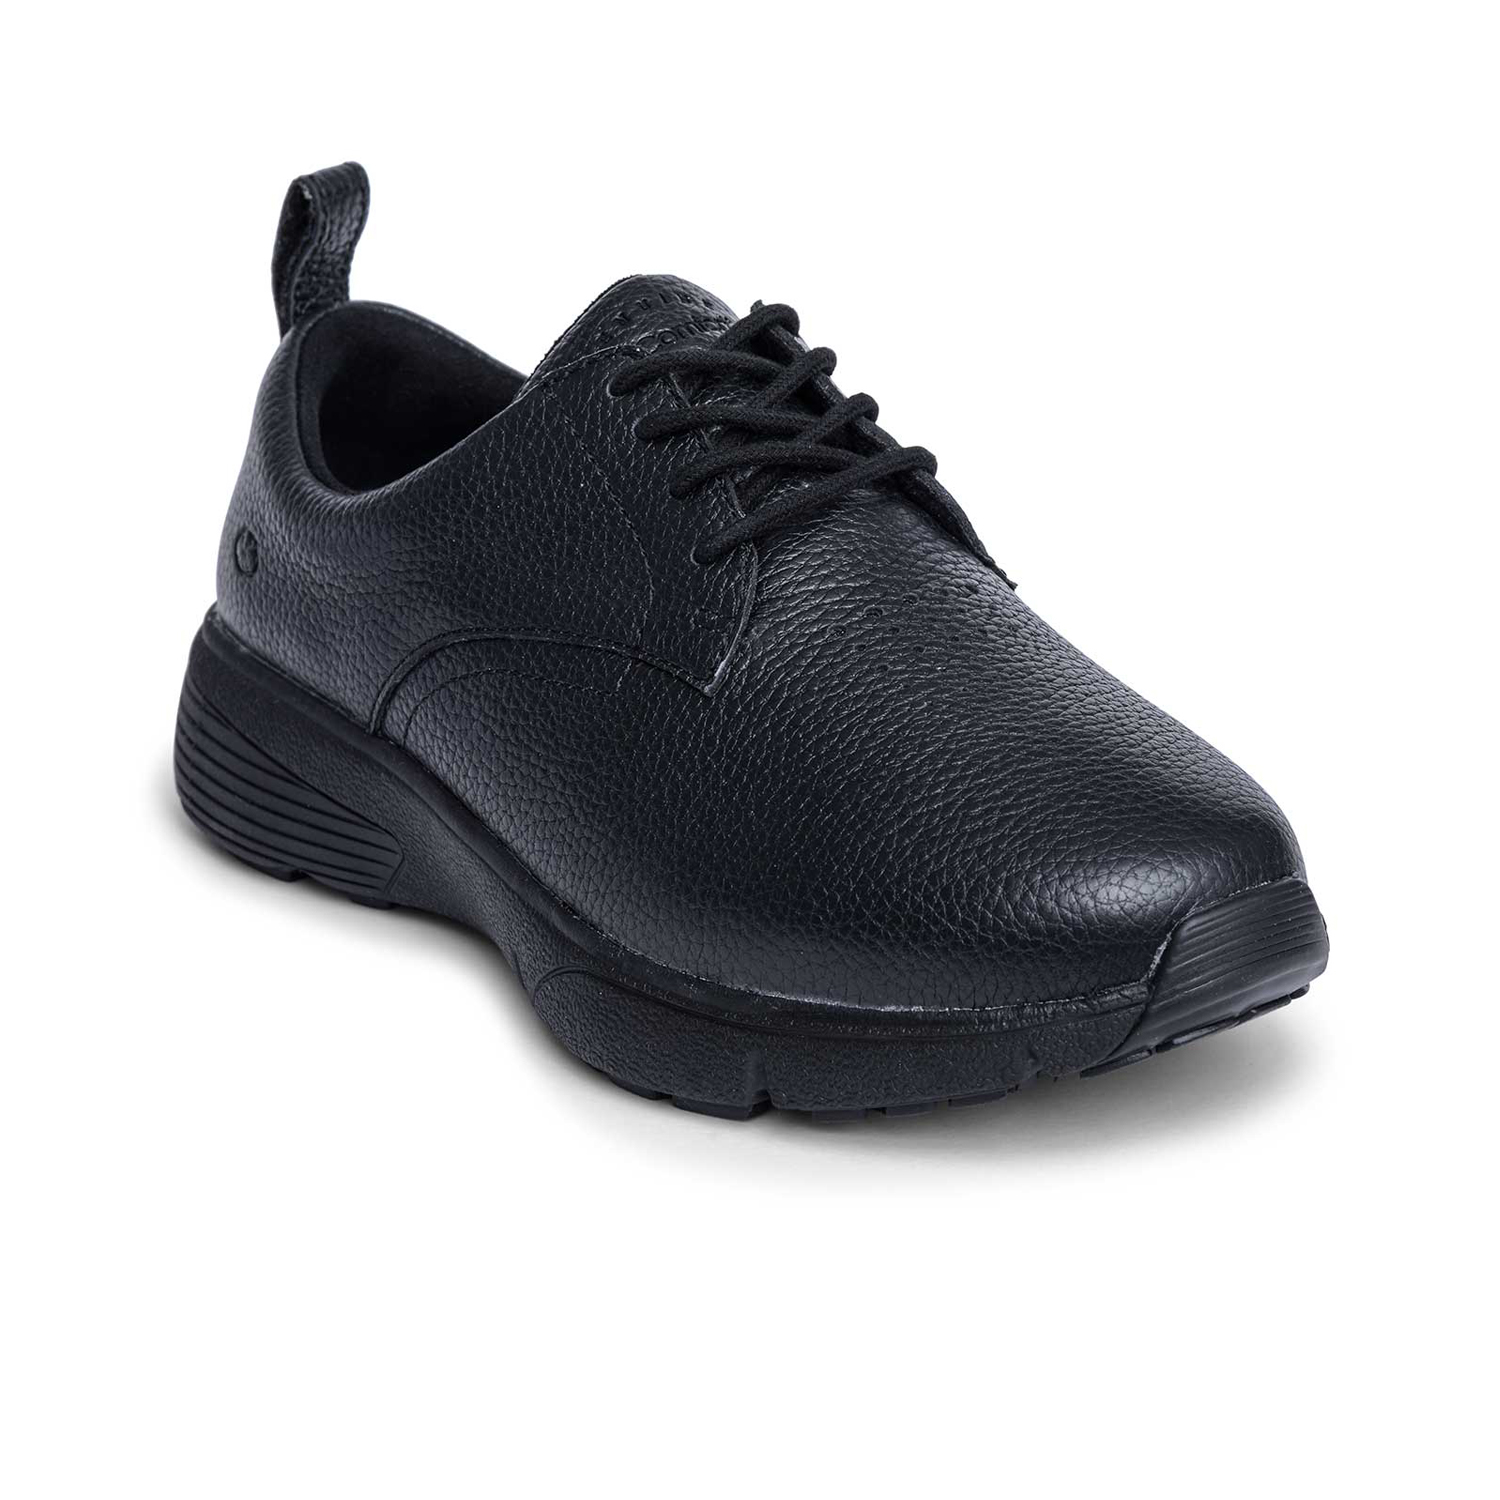 Produktbild DR. Comfort® Ruth schwarz Orthopädische Schuhe, Weicher Lederschuh mit stabilisierender und dämpfender Laufsohlenkonstruktion für einen sicheren Gang